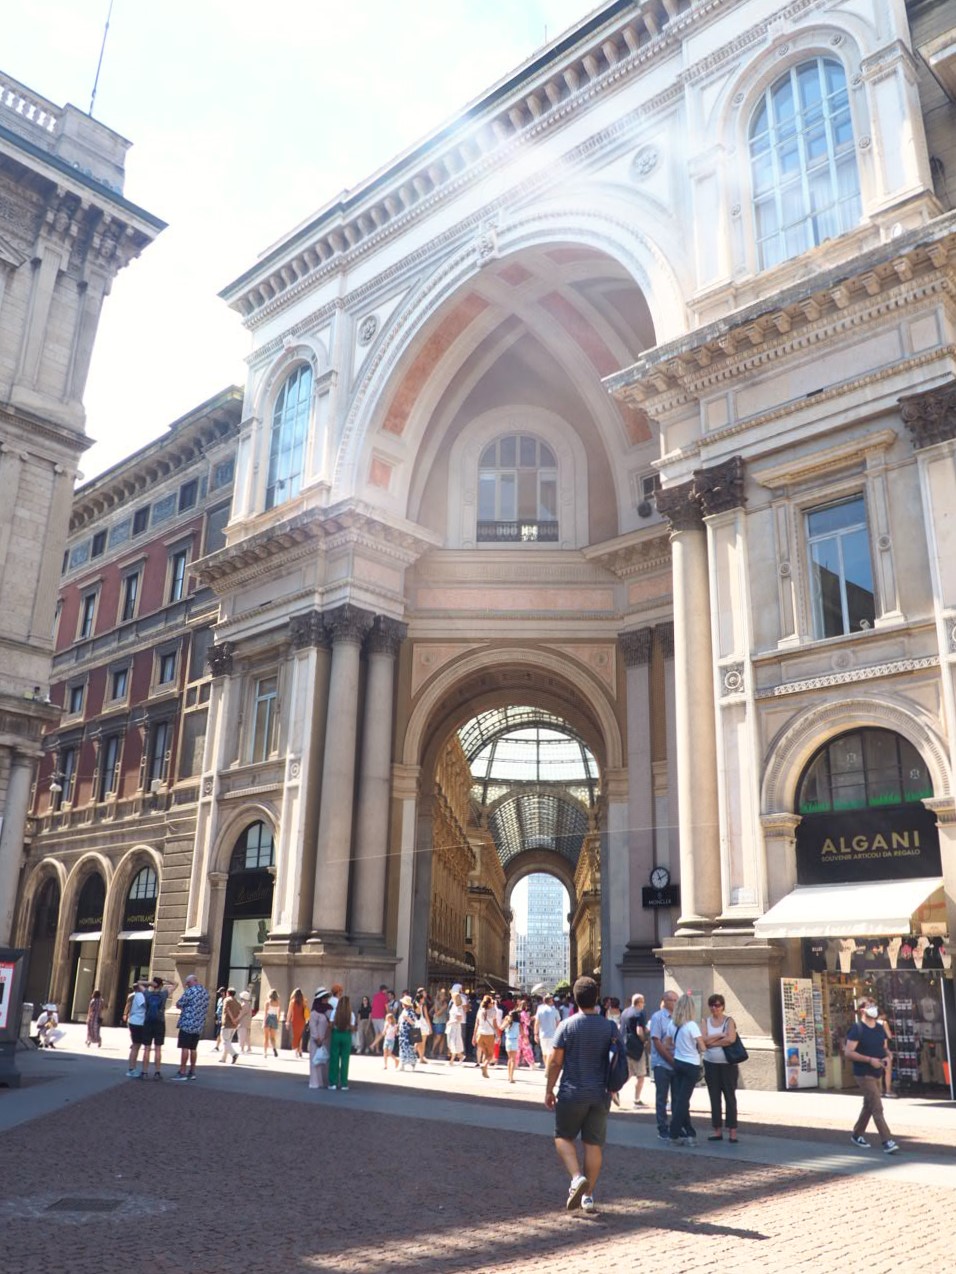 Gallerie-Vittorio-Emanuele-II-Milan-galerie-marchande-historique-et-elegante-architecture-neoclassique